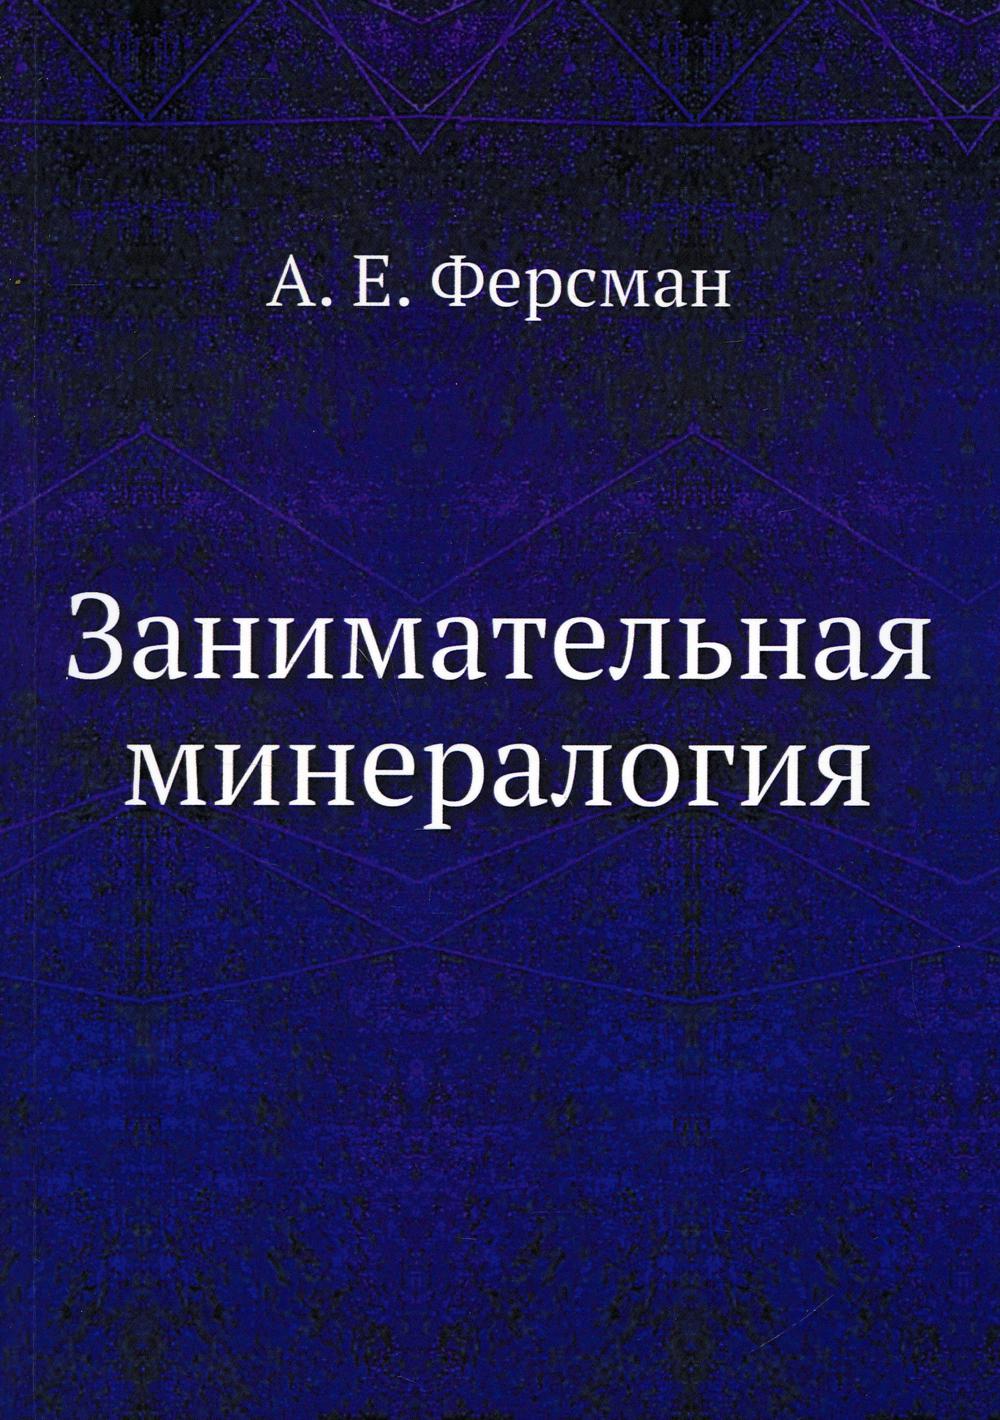 Занимательная минералогия (репринтное изд.)